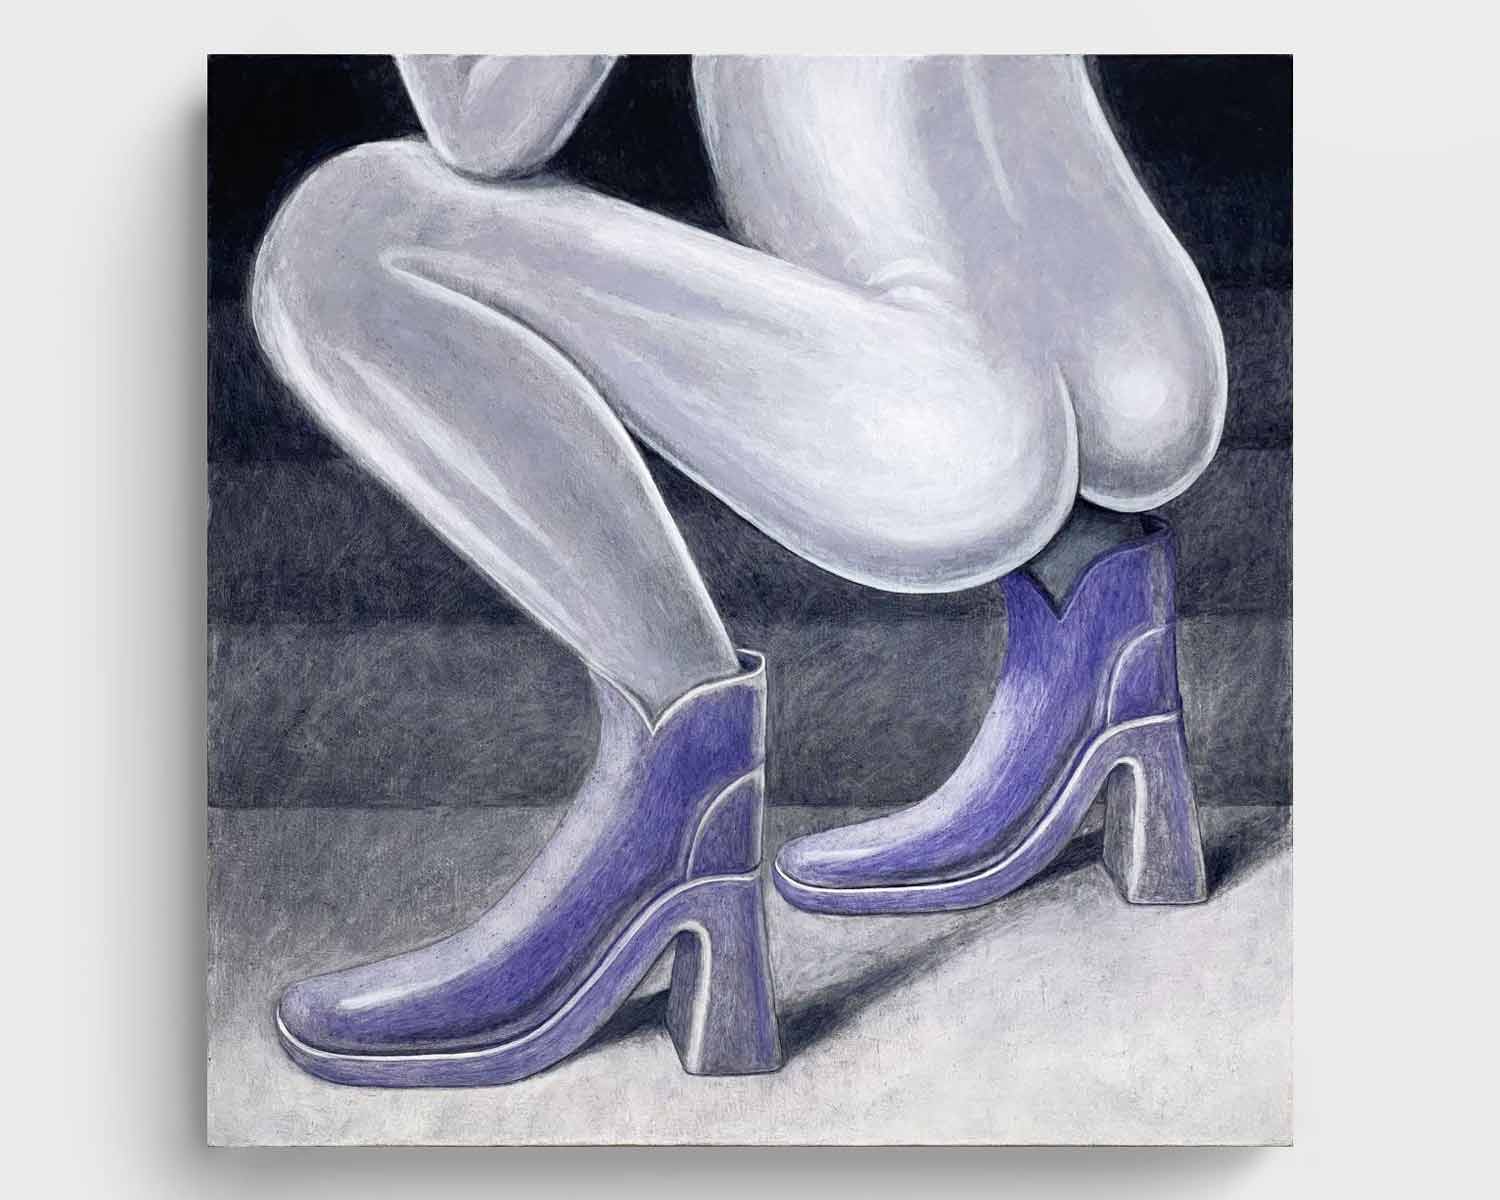 Krzysztof Grzybacz, A shiny boots (2022) 70 x 70 cm, oil on canvas